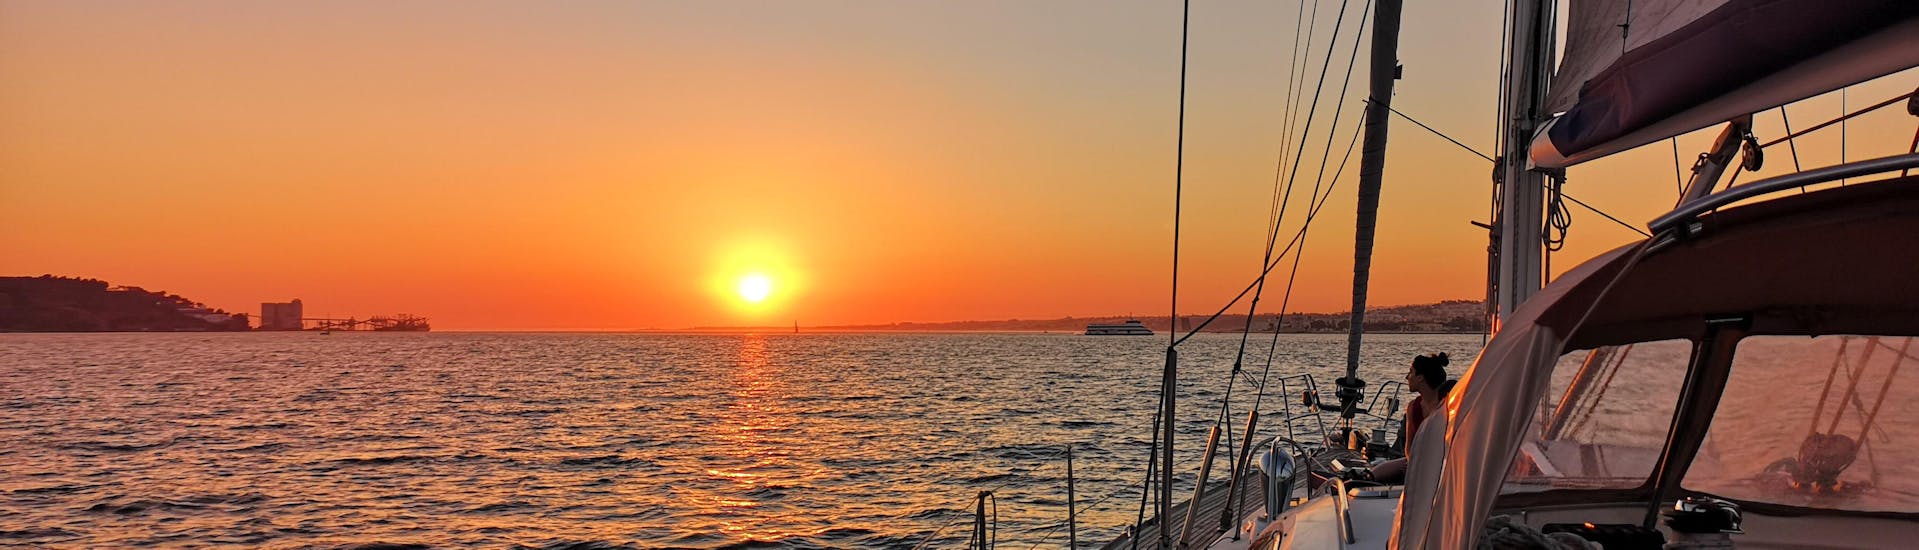 Zeilboottocht van Doca de Belém naar Taag (Tejo) met zonsondergang & toeristische attracties.